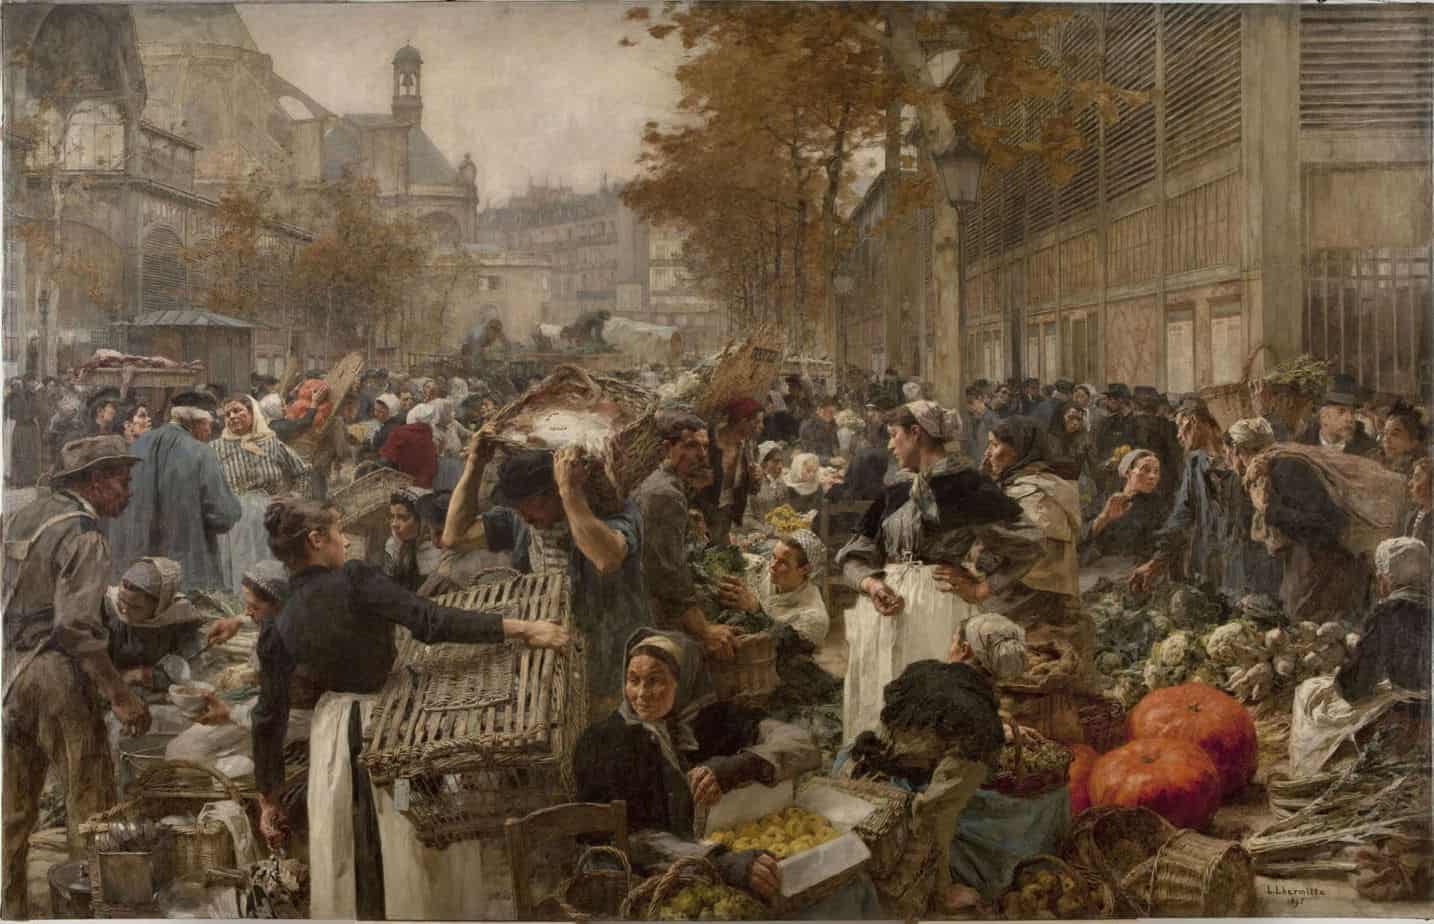 Les Halles (1895) by Léon Lhermitte (French, 1844-1925). Historic marketplace in Paris